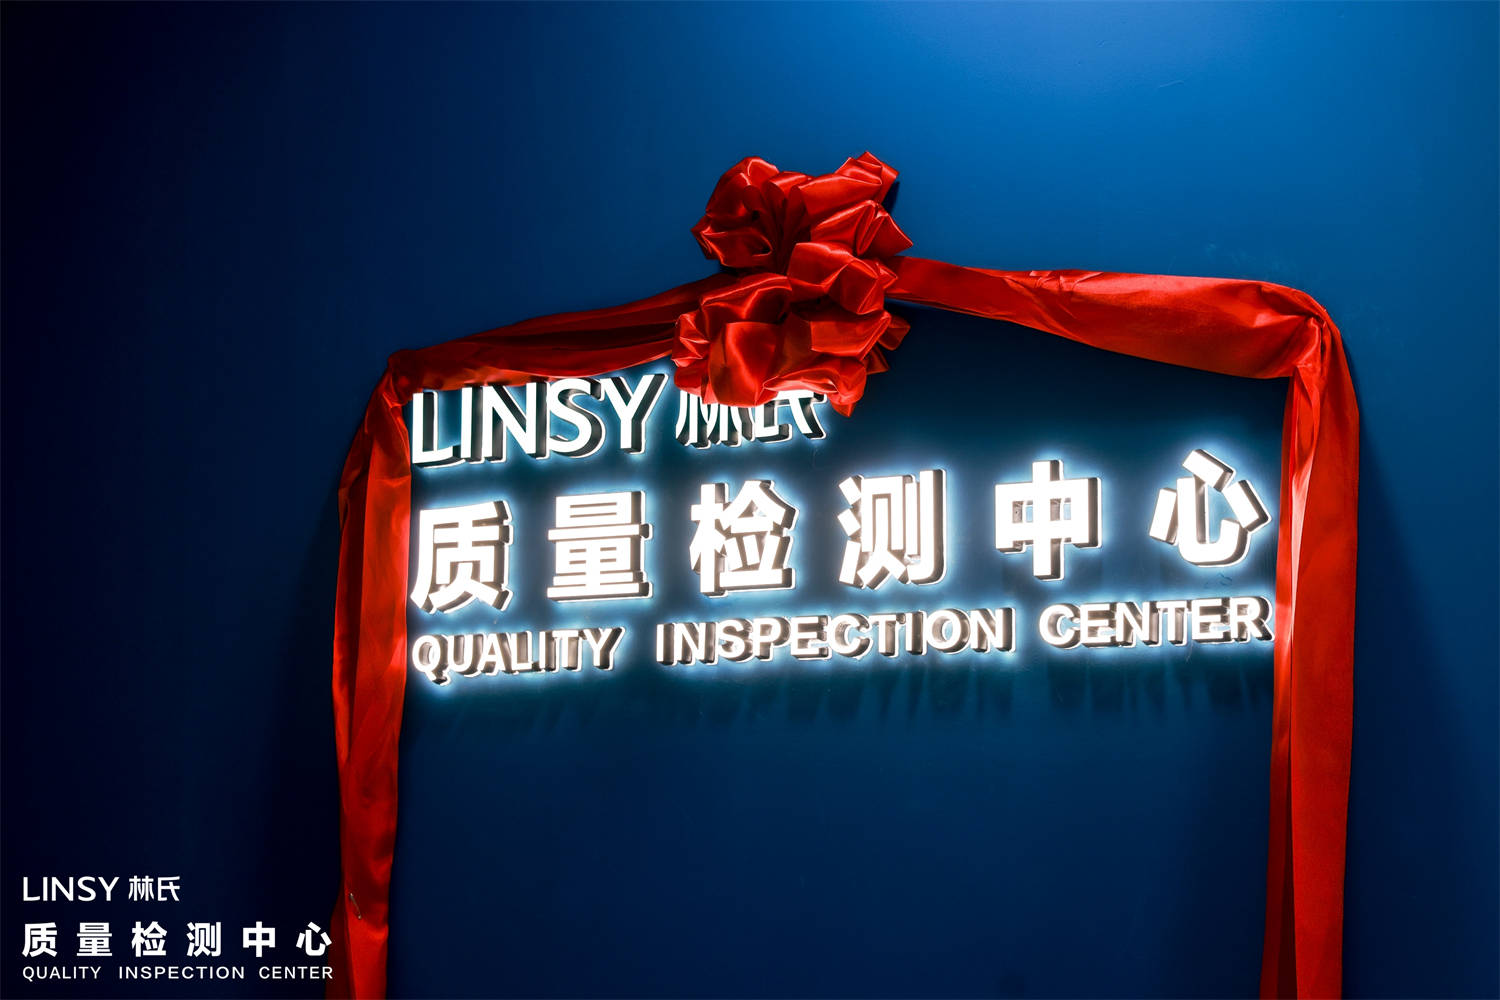 تهانينا على افتتاح مركز فحص الجودة التابع لشركة LINSY
        